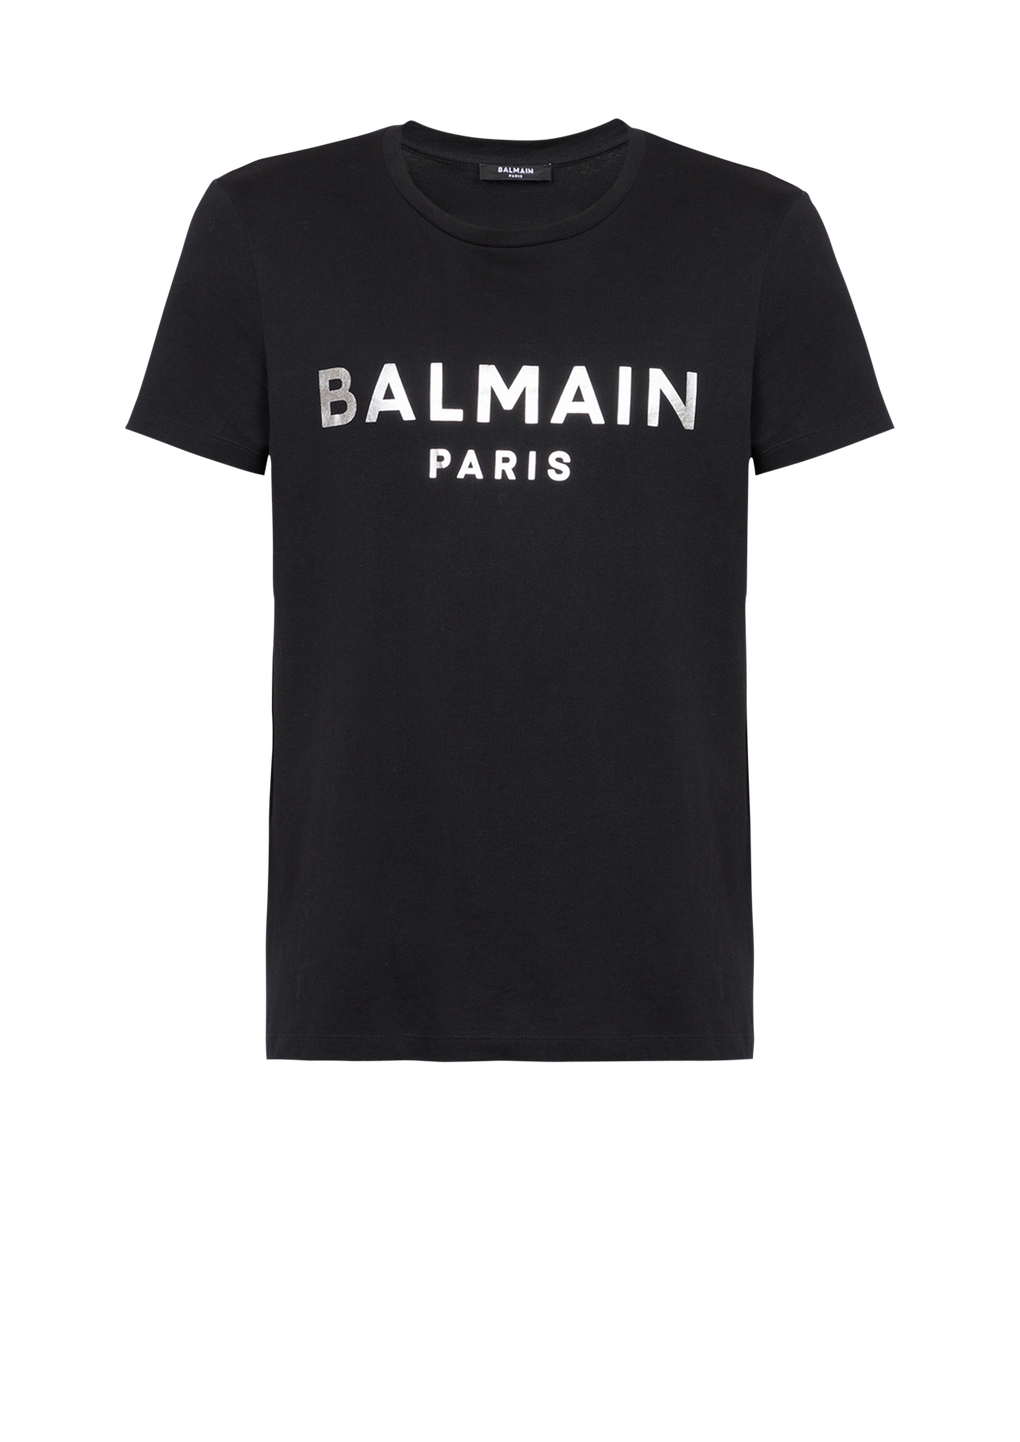 T-shirt en coton imprimé logo Balmain Paris, argent, hi-res